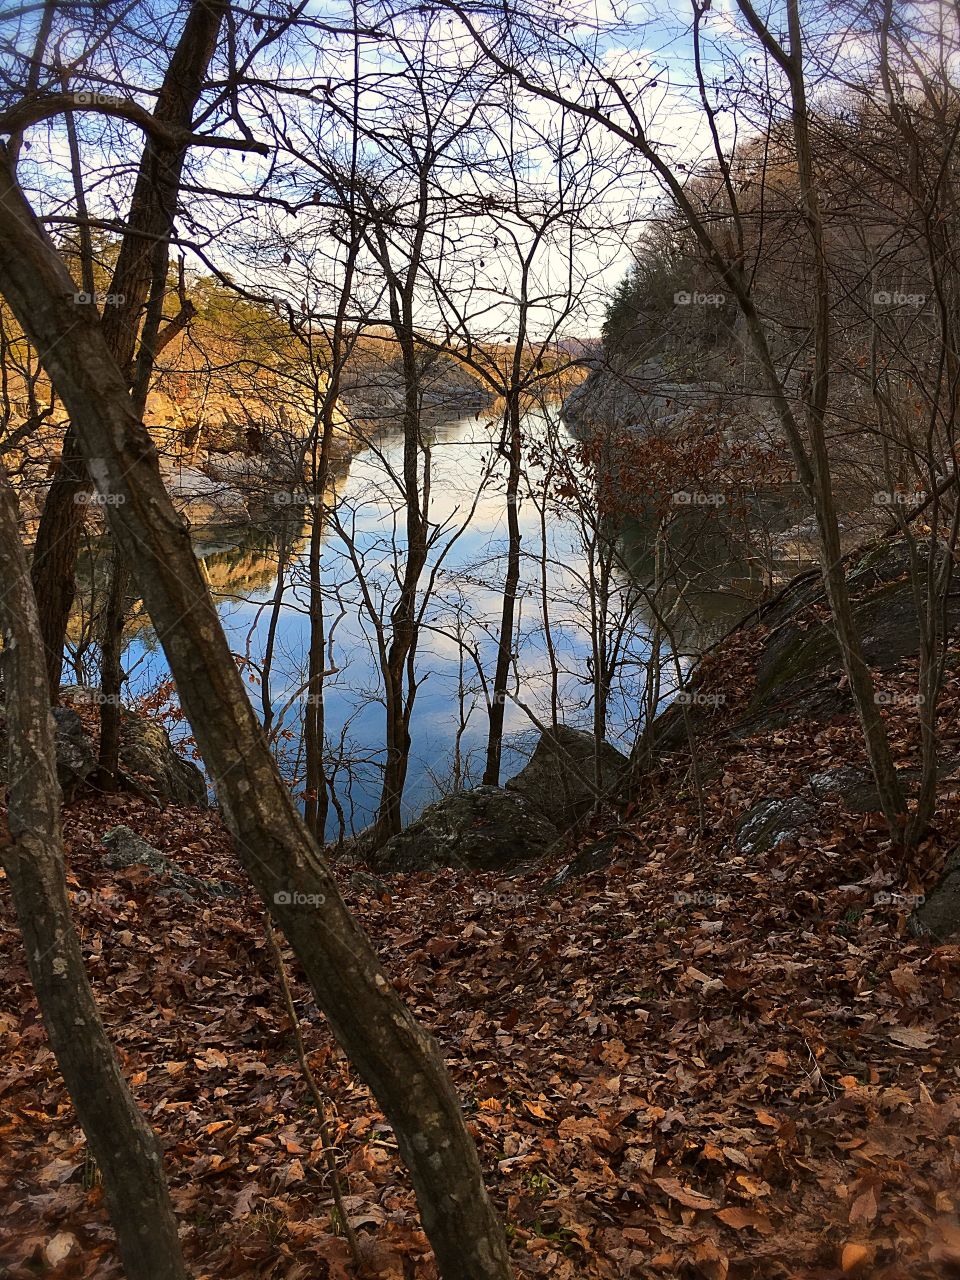 Potomac River in December